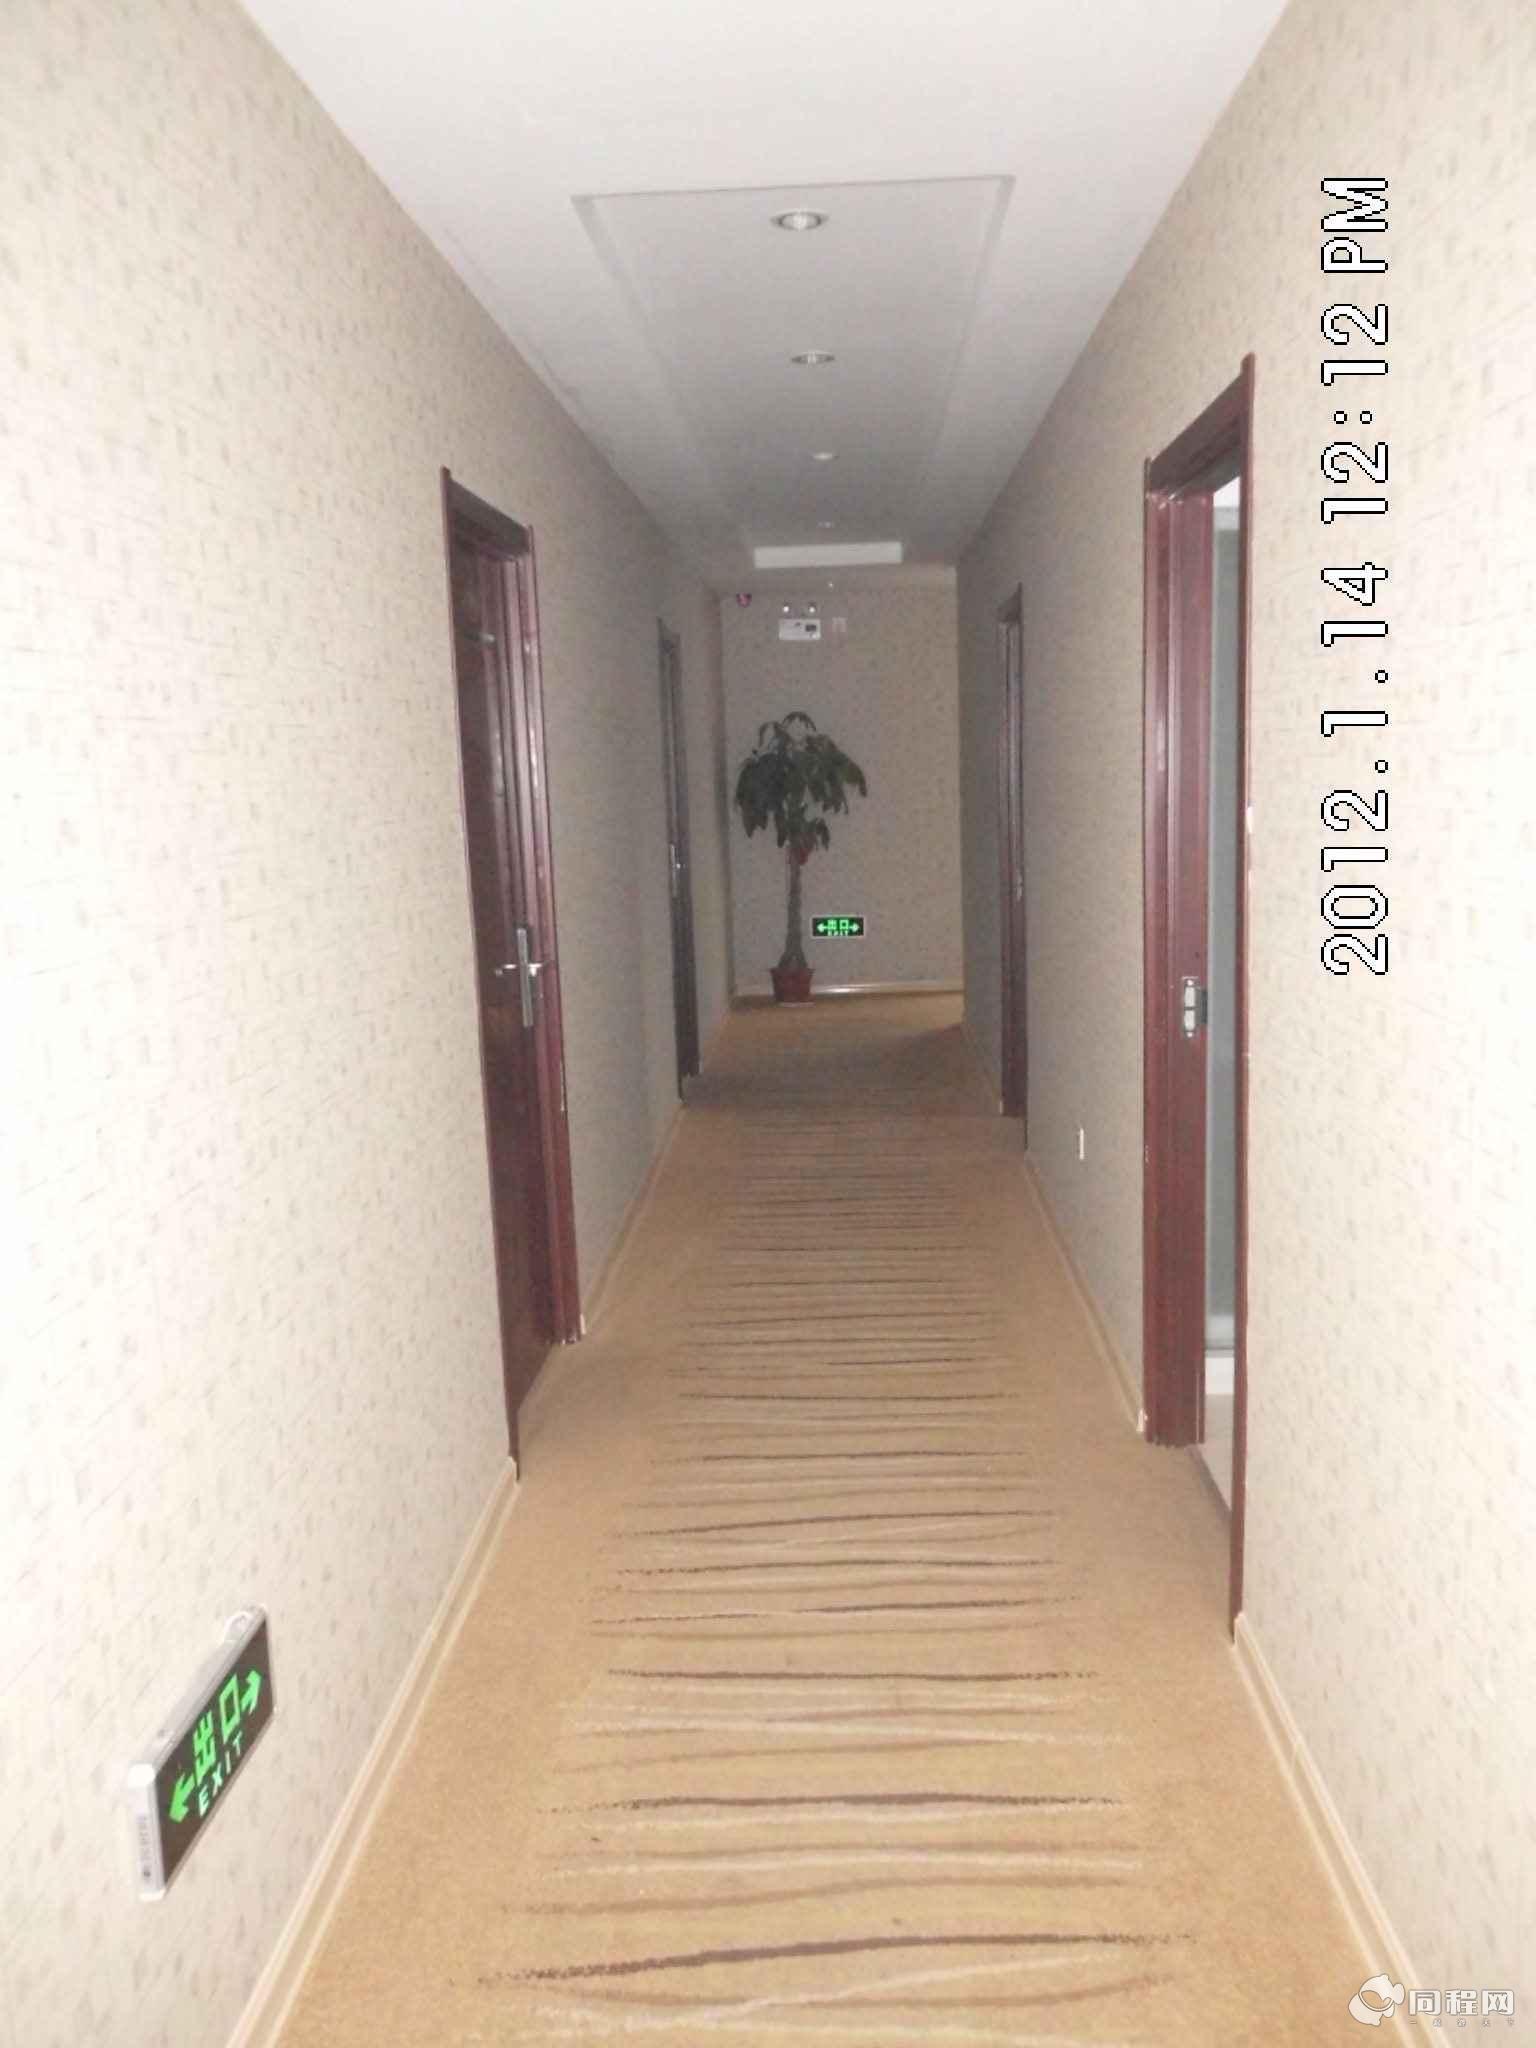 南京麦森快捷酒店图片走廊[由15095hsyphb提供]